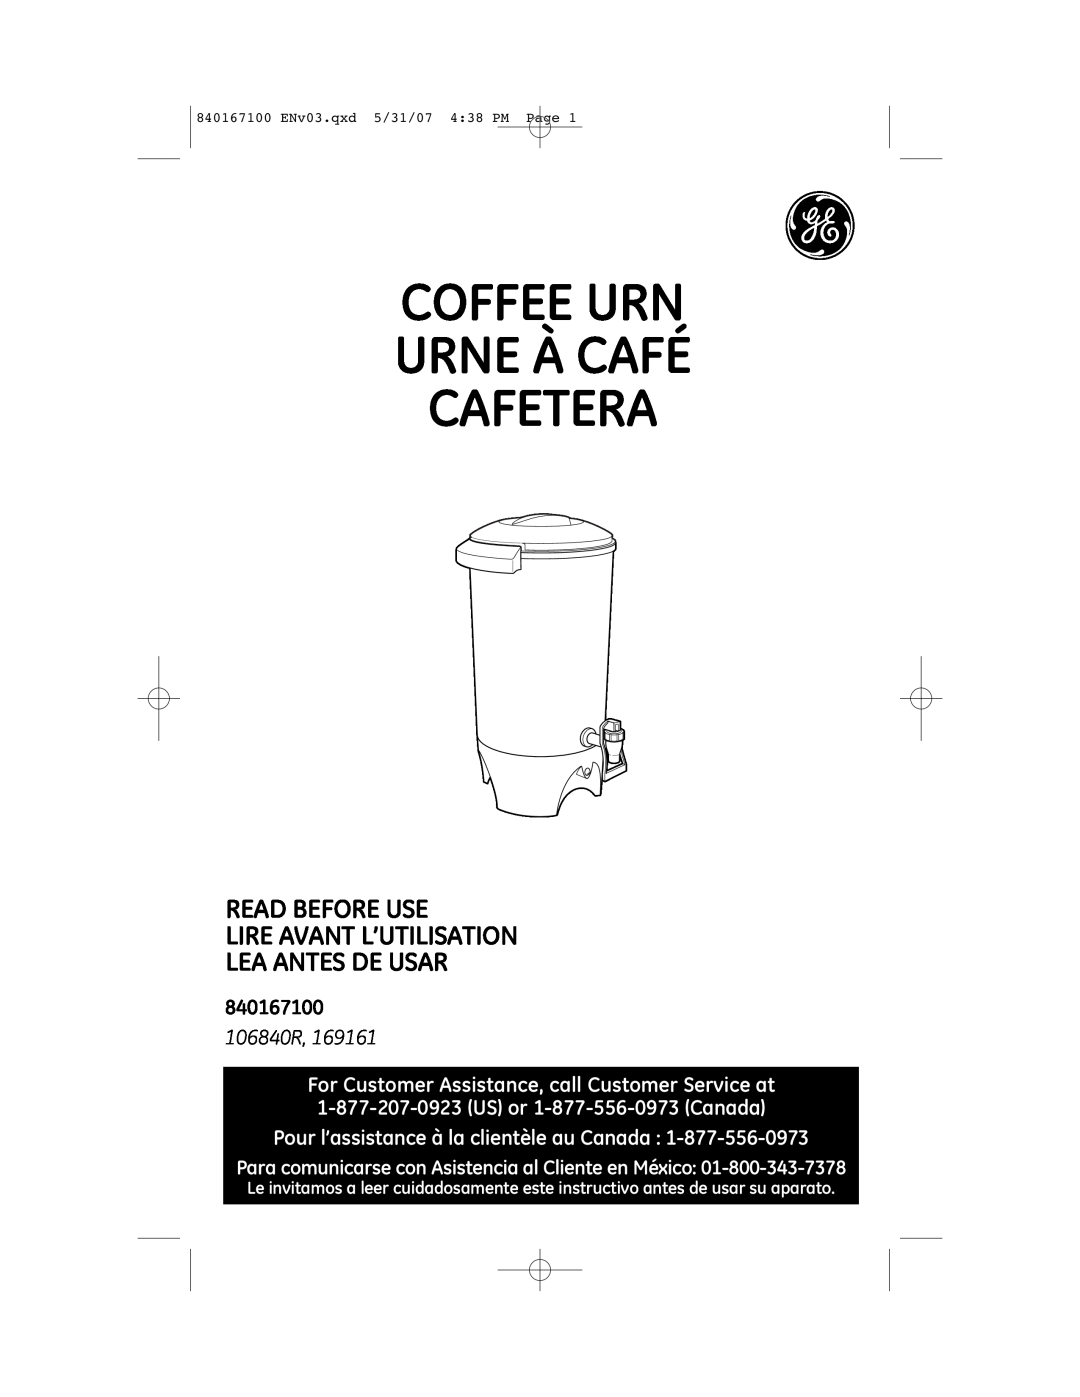 GE 169161 manual Coffee Urn Urne À Café Cafetera, Read Before Use Lire Avant L’Utilisation, Lea Antes De Usar, 840167100 